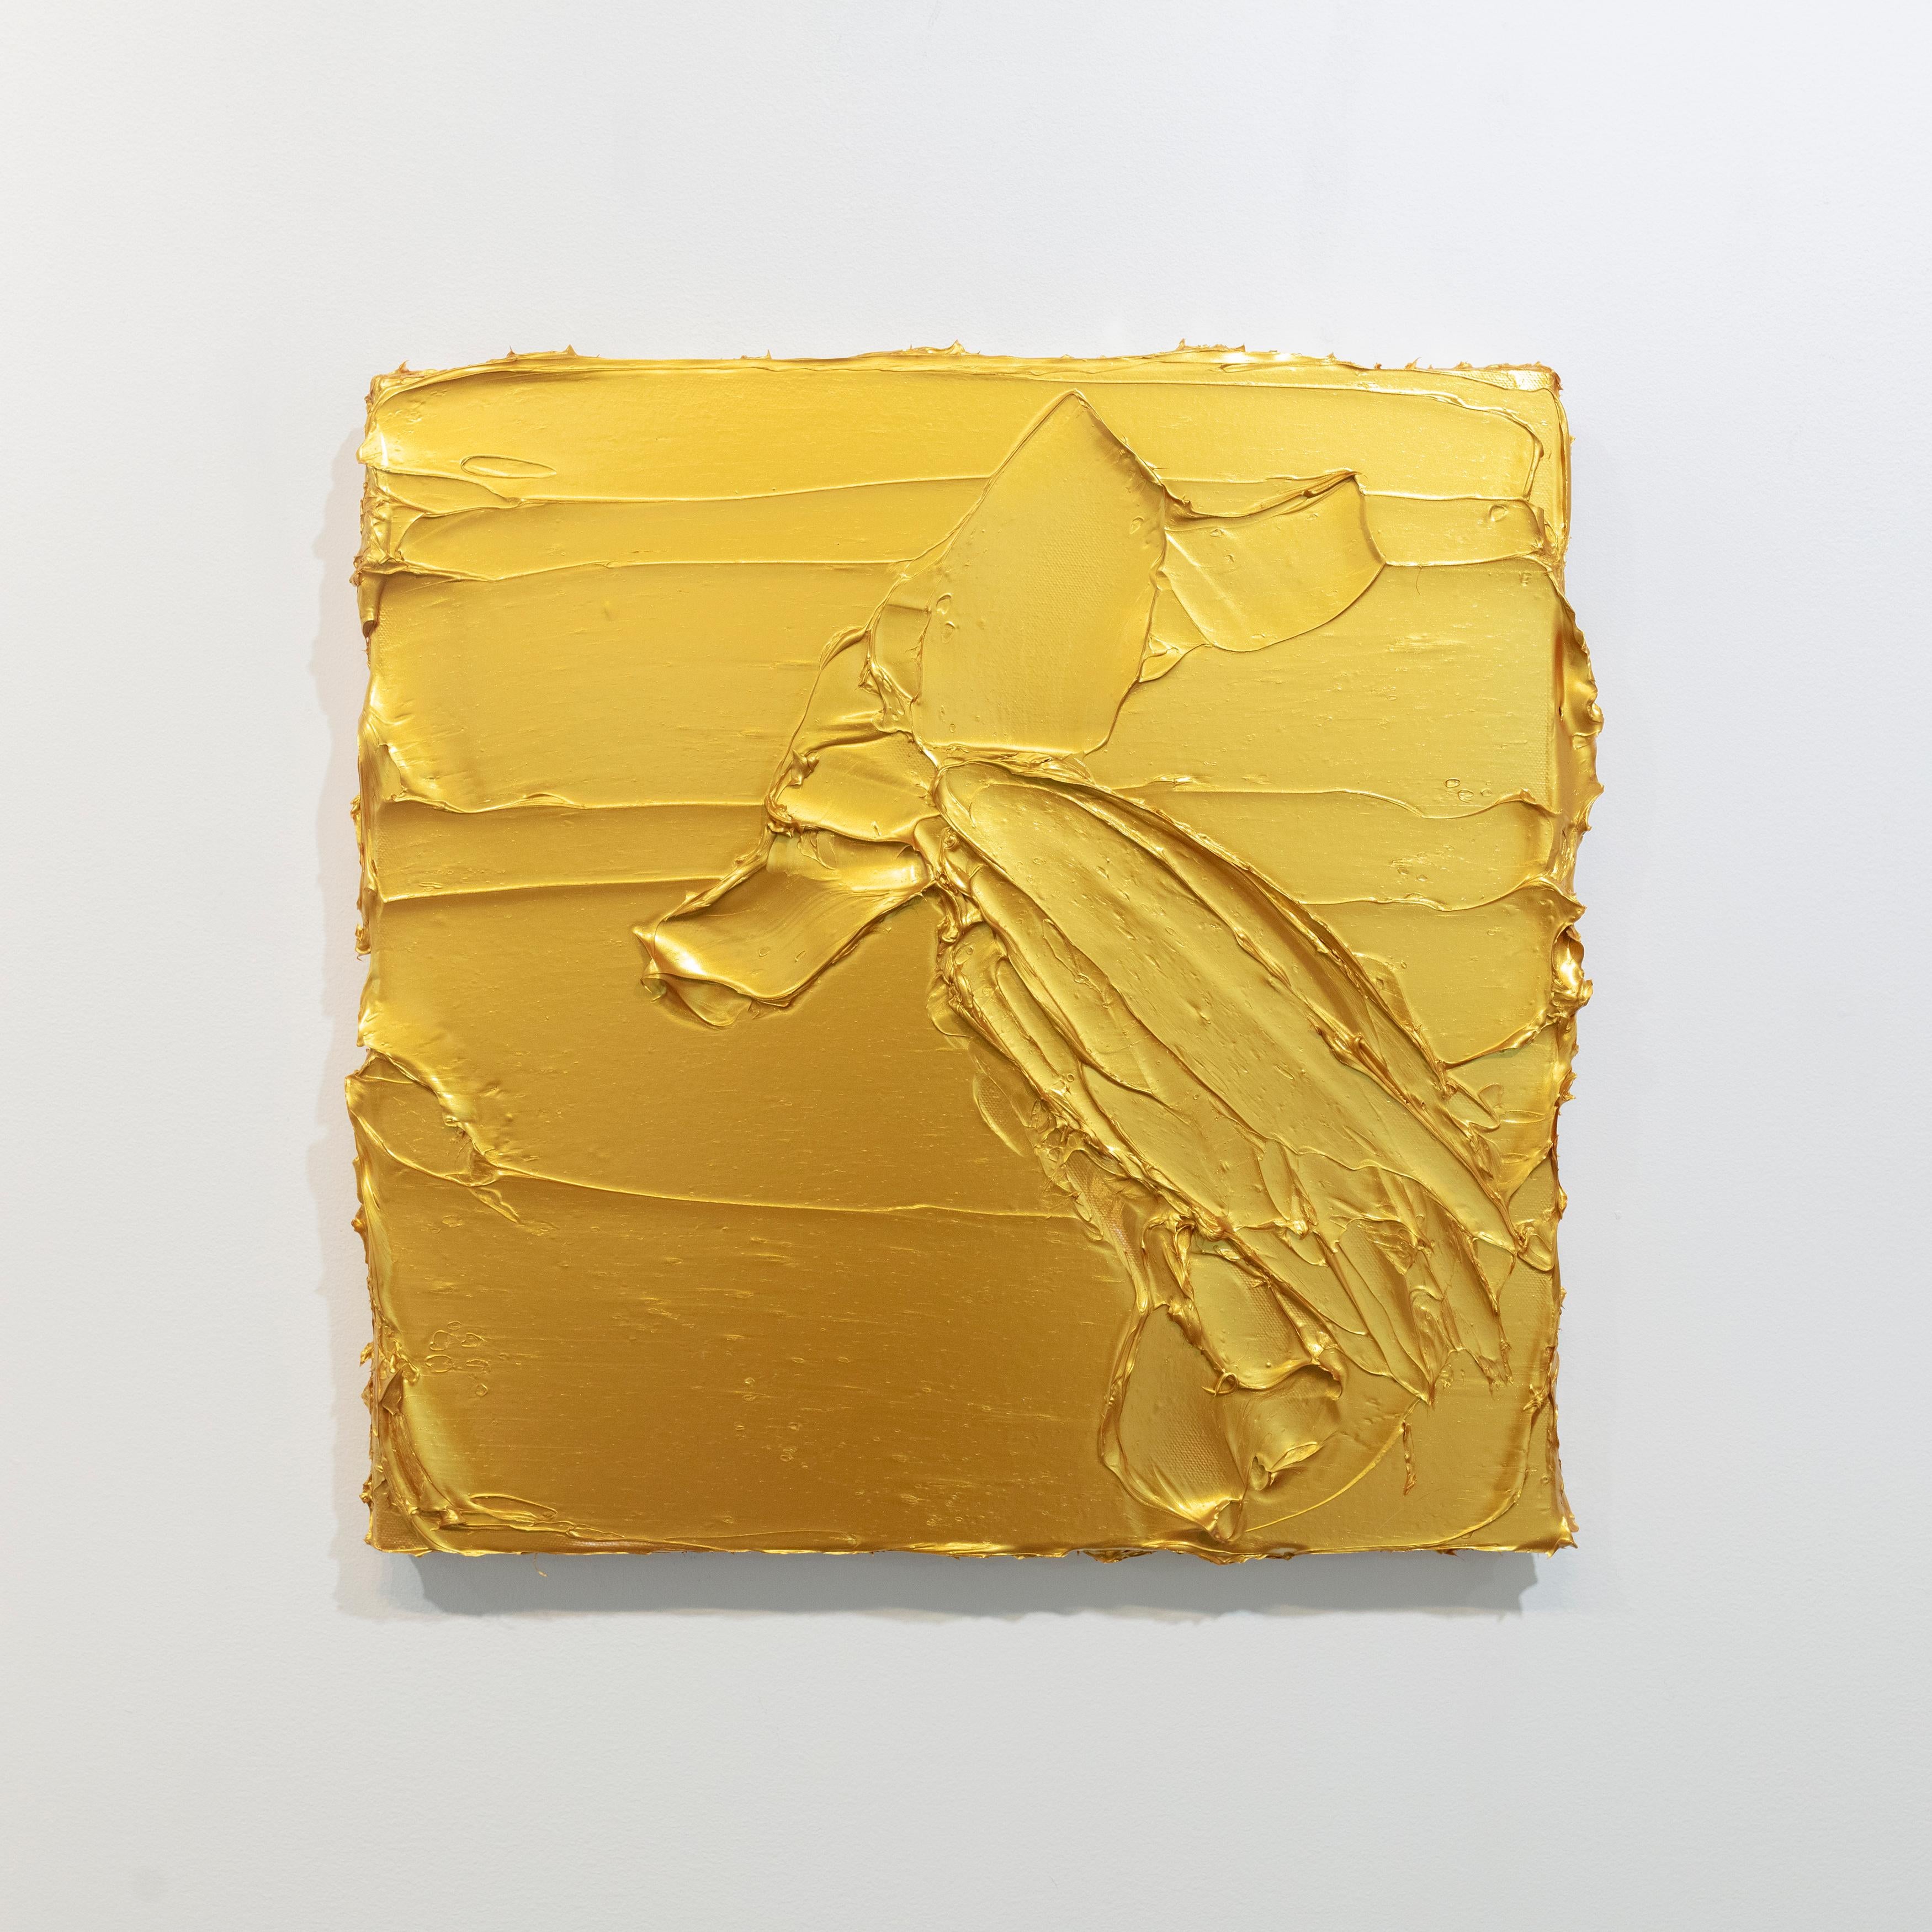 Cette paire de peintures abstraites de Teodora Guererra présente une palette d'or métallique. La peinture est appliquée en couches épaisses sur la toile pour obtenir une surface très texturée. Ces deux peintures sont comme des sculptures murales.